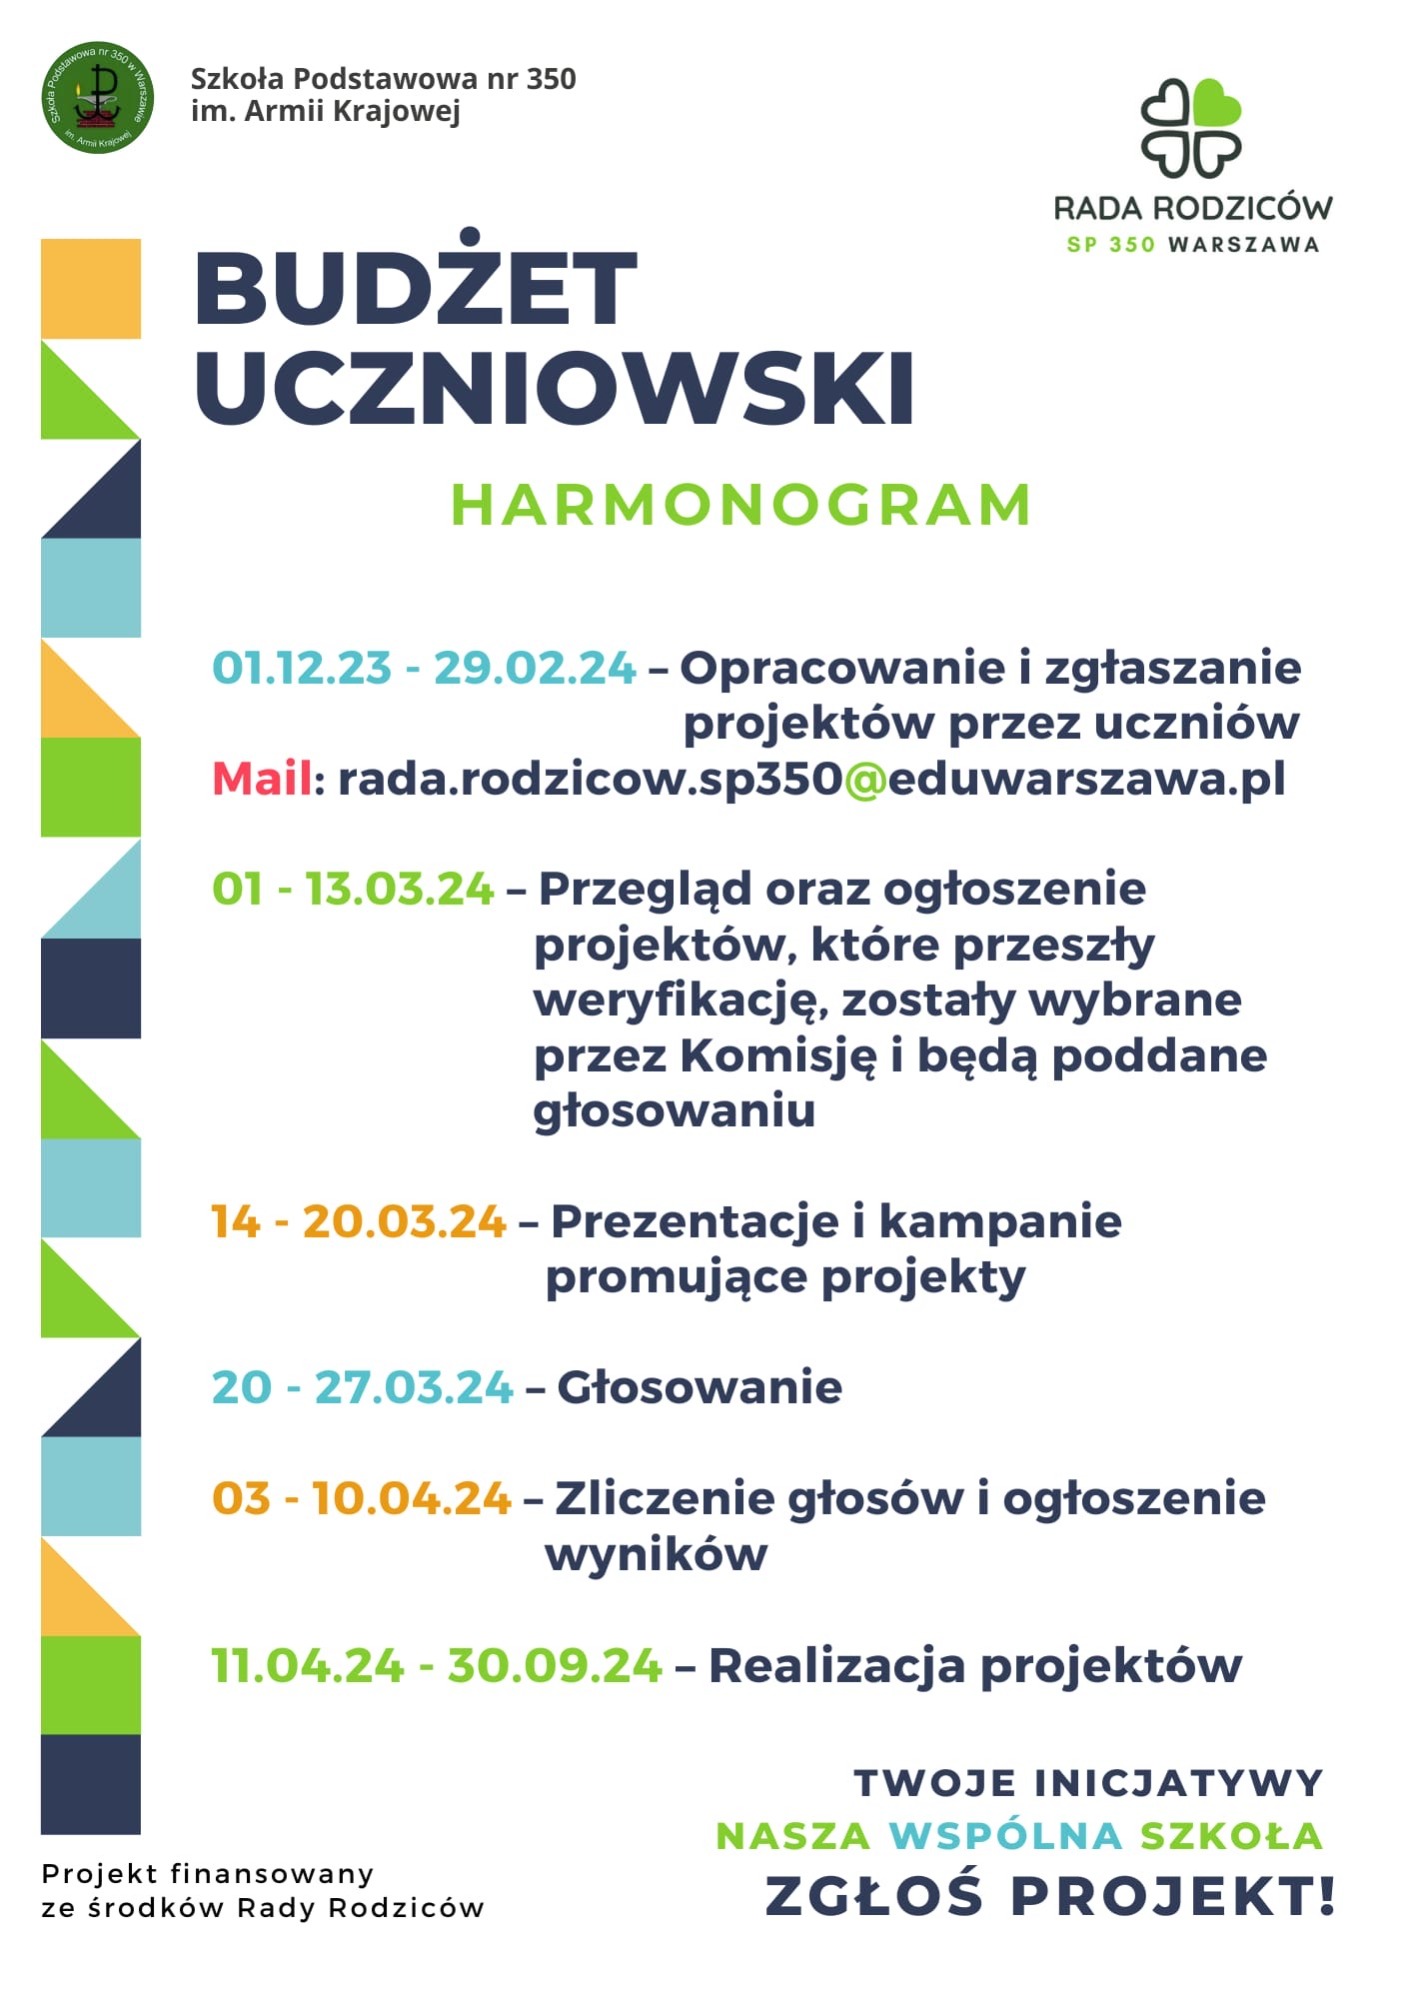 Plakat z harmonogramem Budżetu Uczniowskiego, poniżej jego treść w formacie tekstowym.